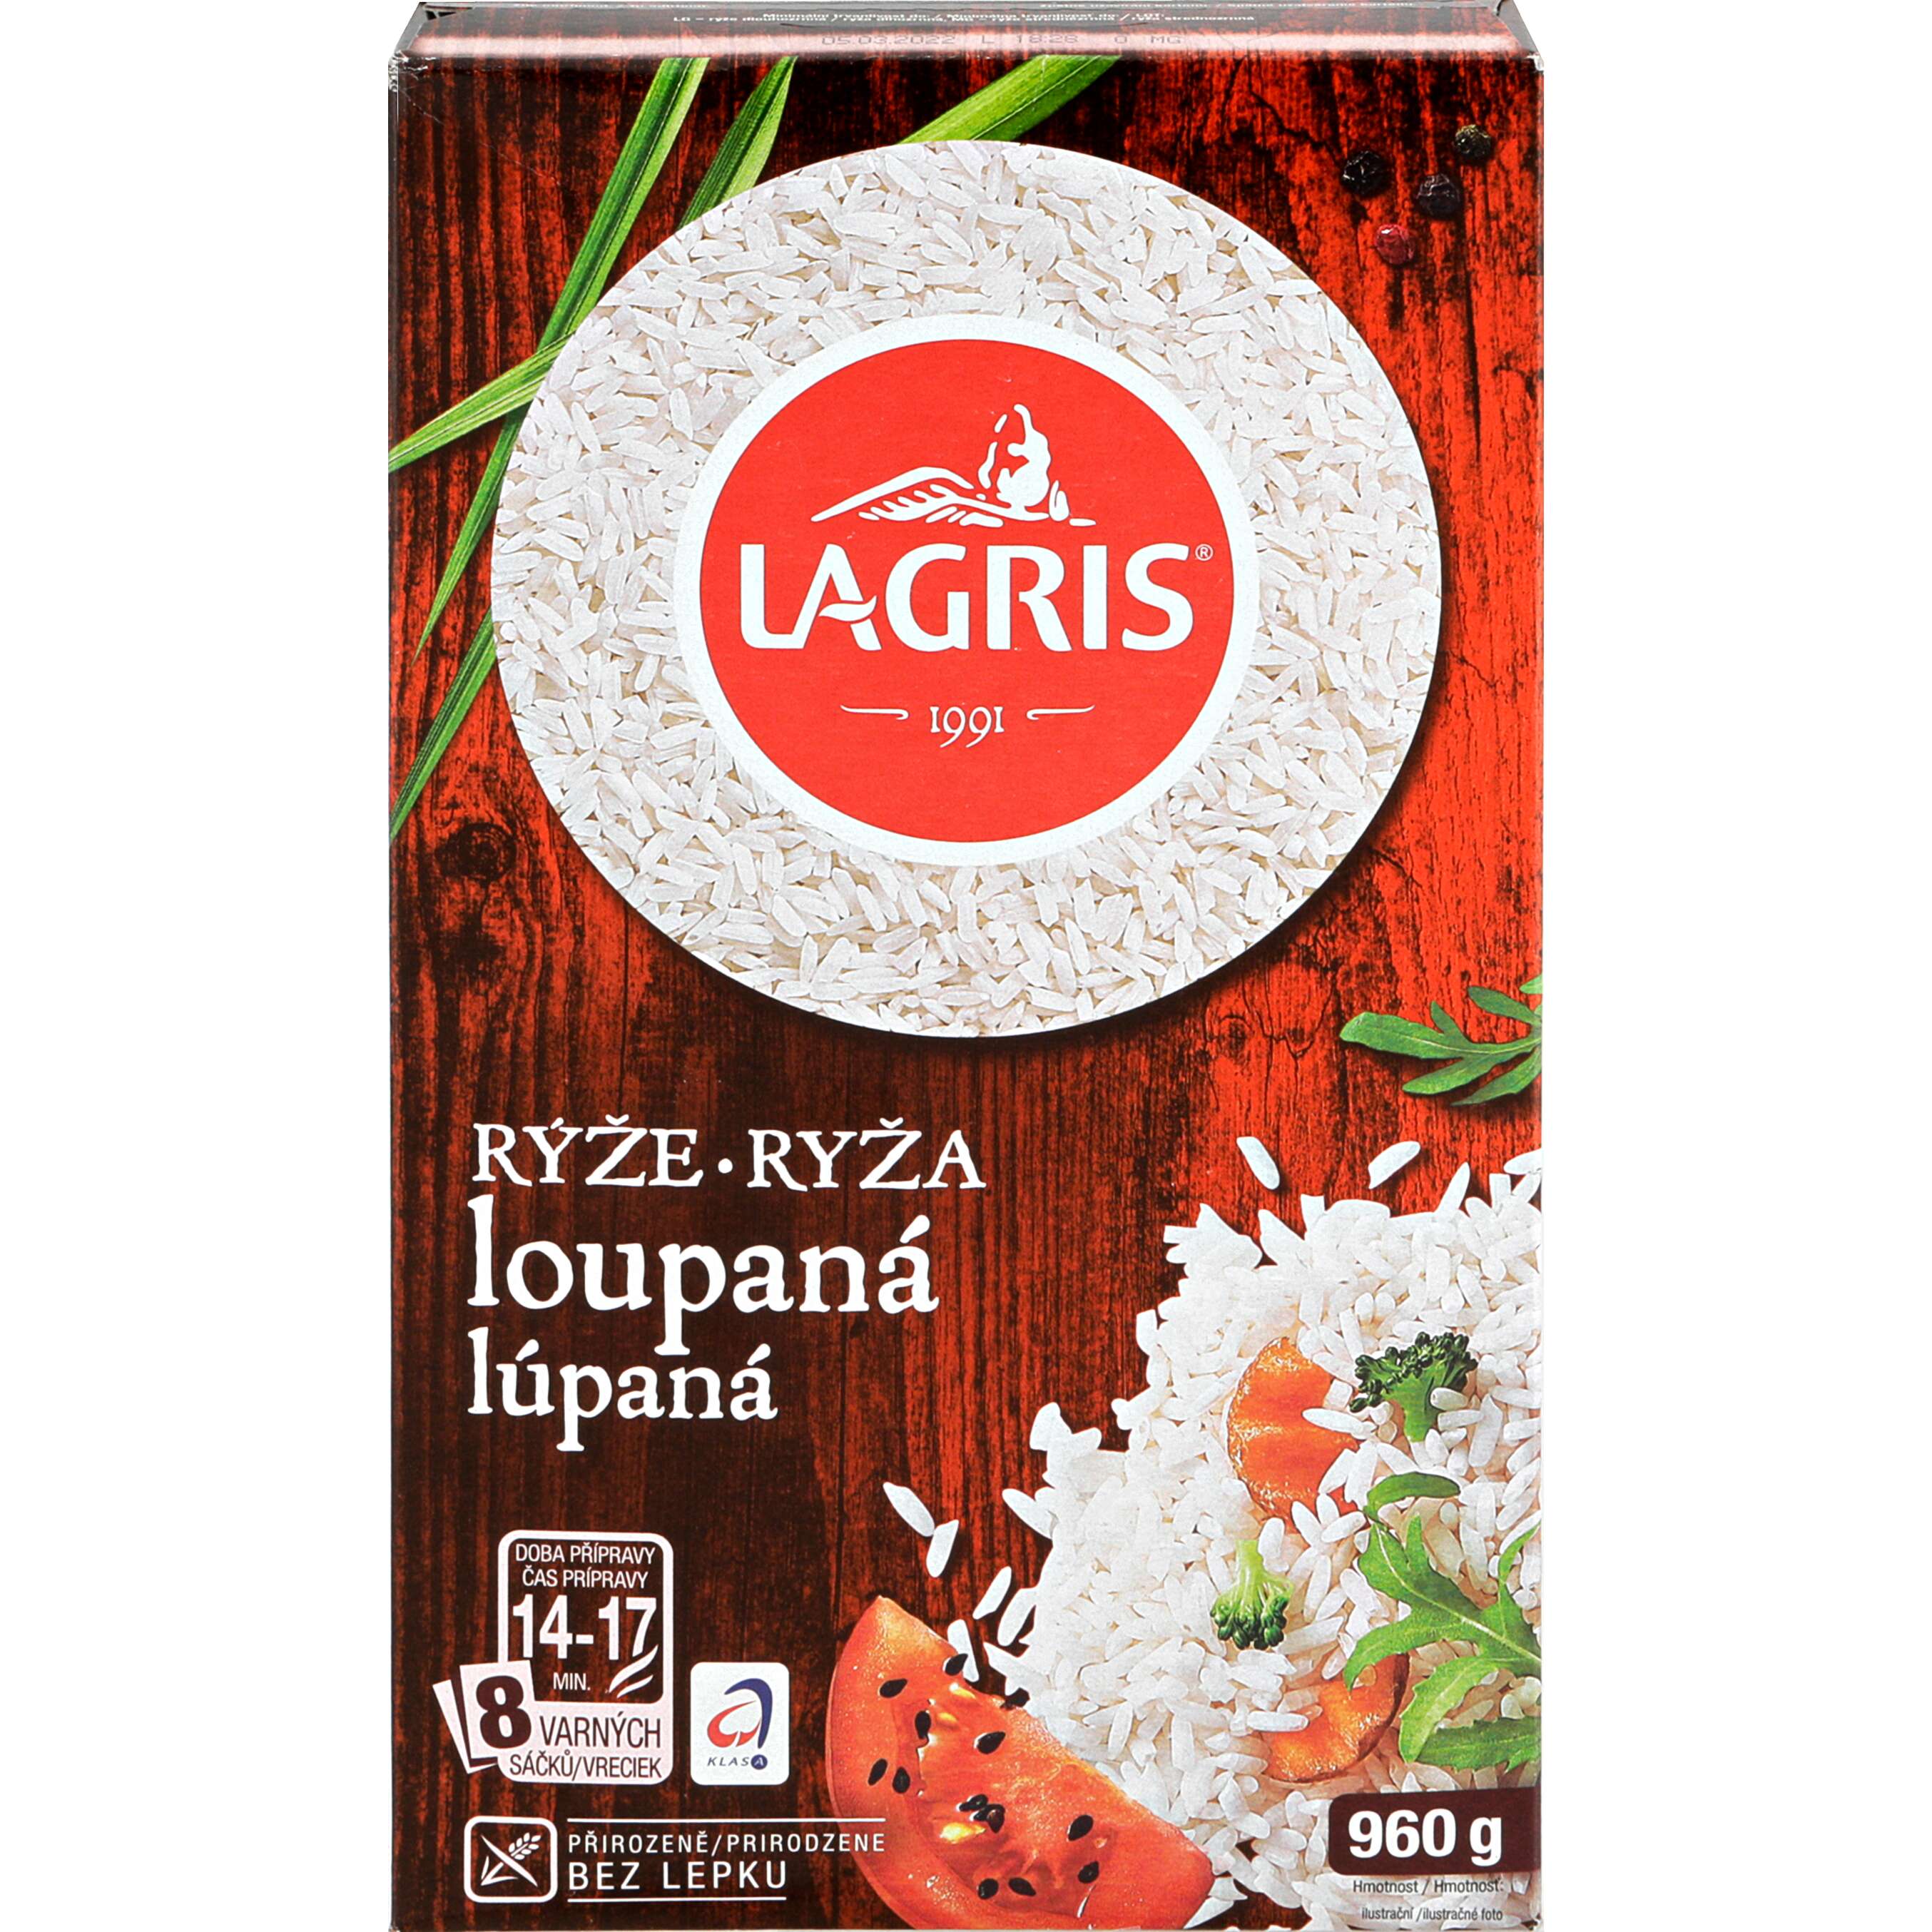 Zobrazit nabídku Lagris Rýže loupaná